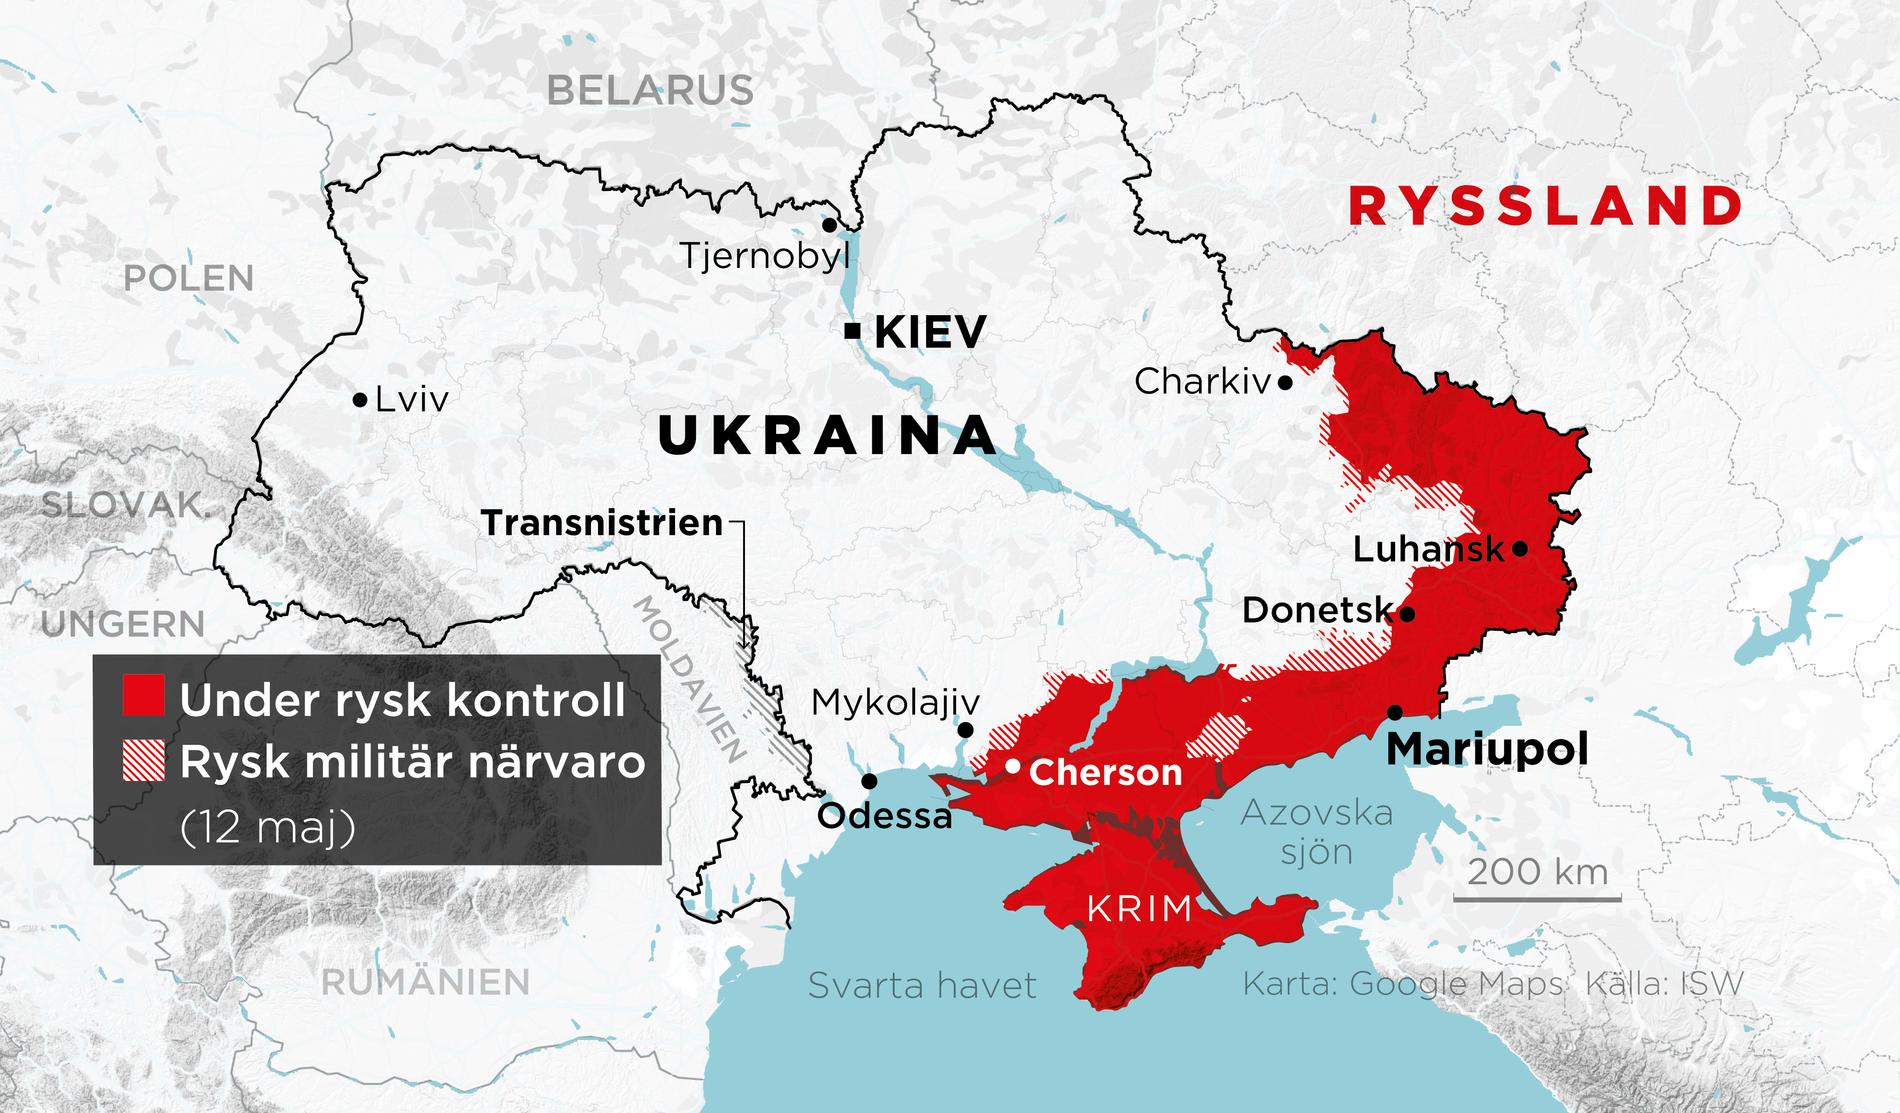 Områden under rysk kontroll samt områden med rysk militär närvaro 12 maj.